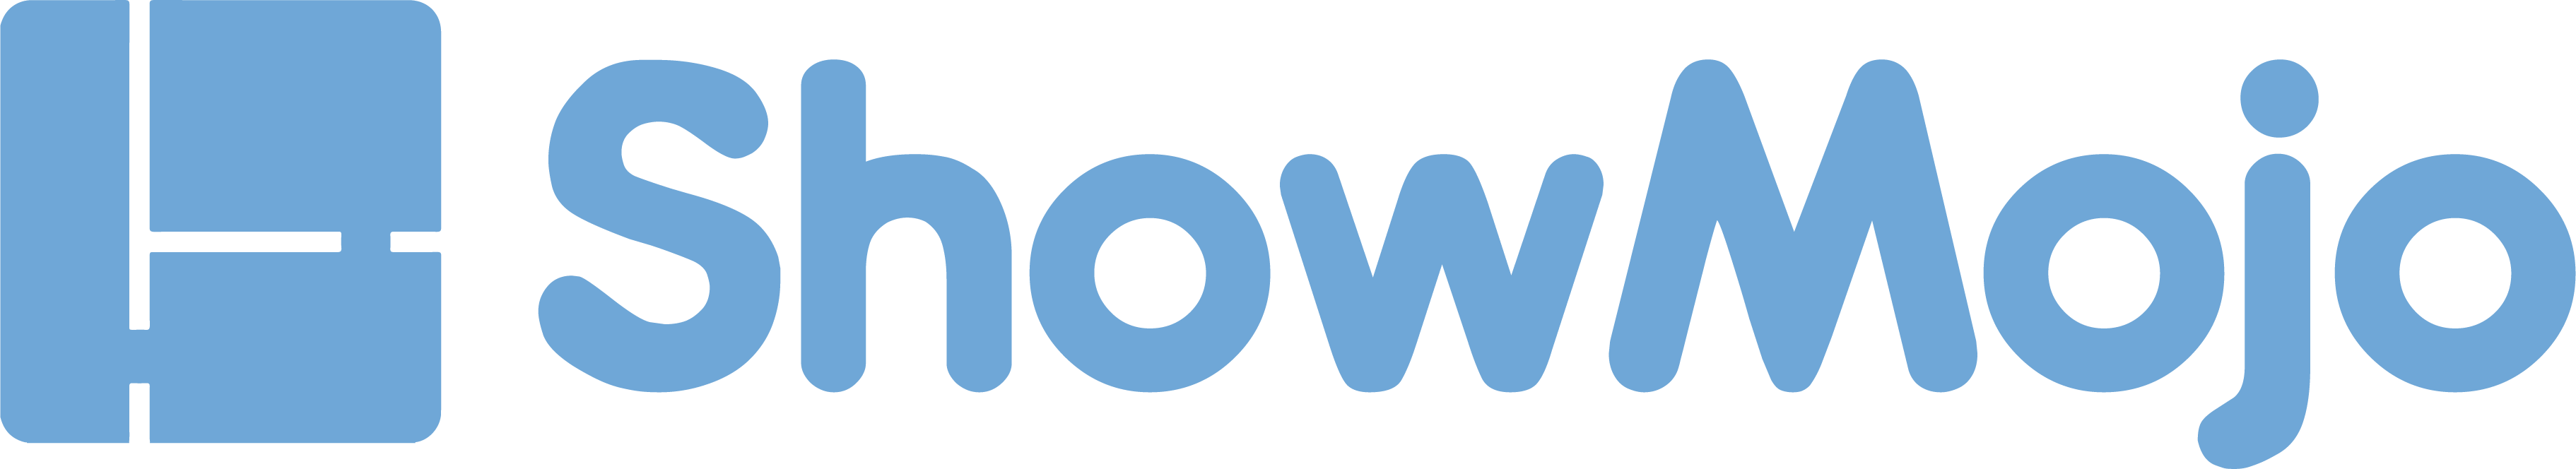 ShowMojo_logo_Blue